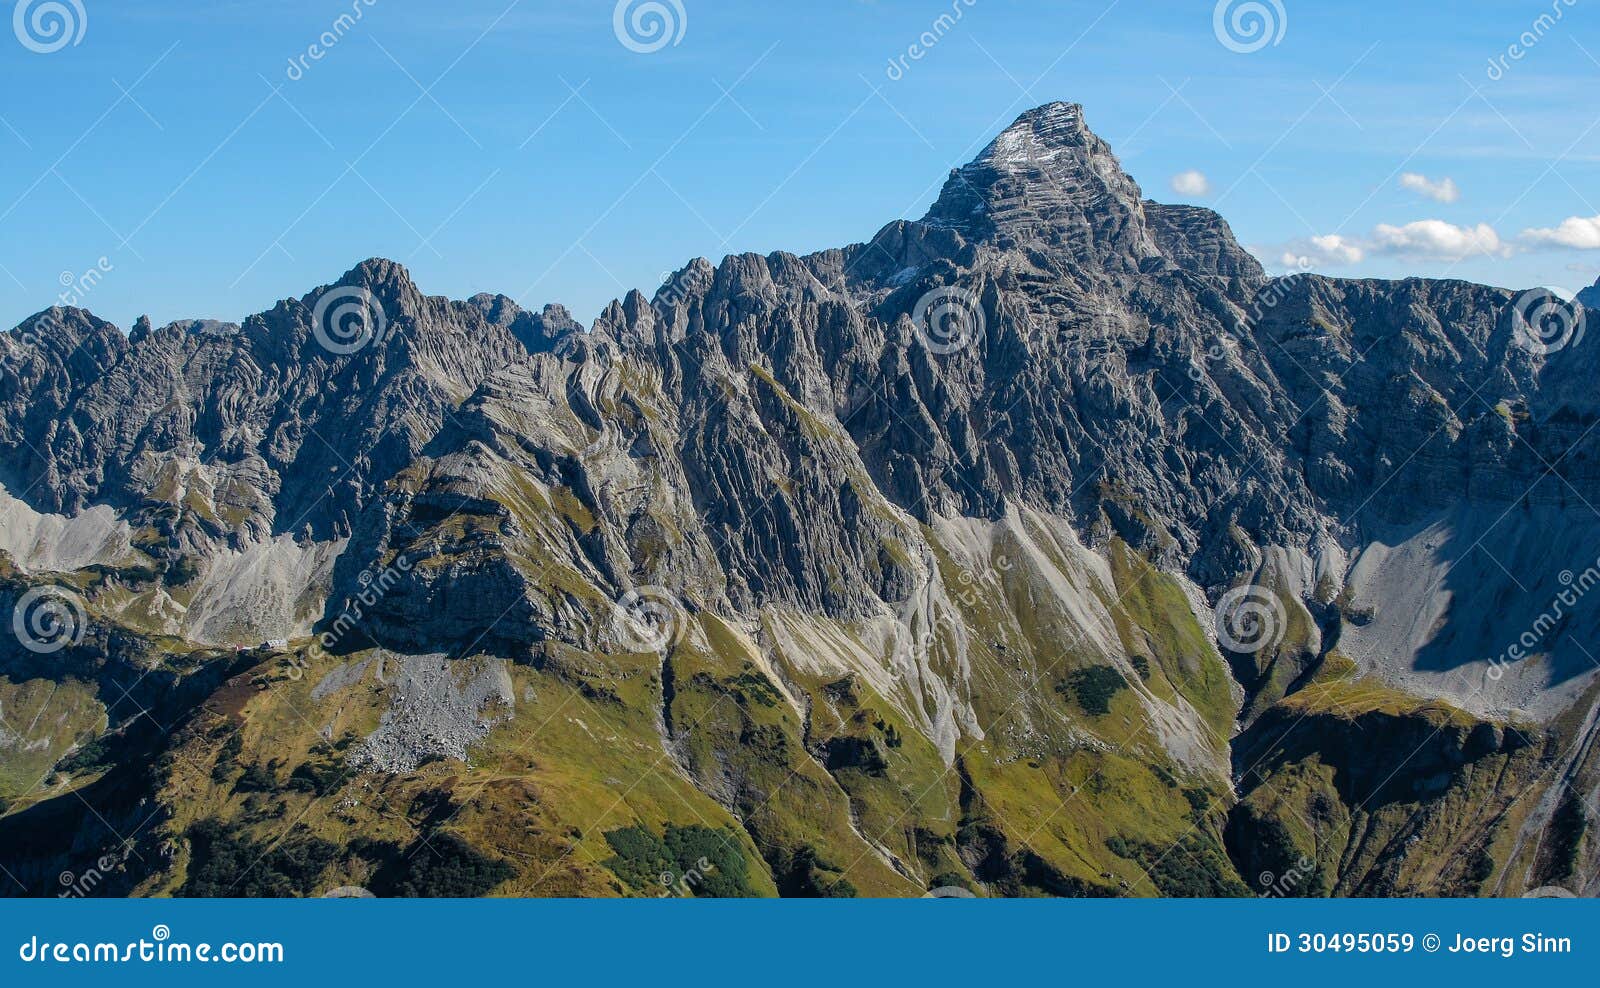 impressive alpine peak close to oberstdorf